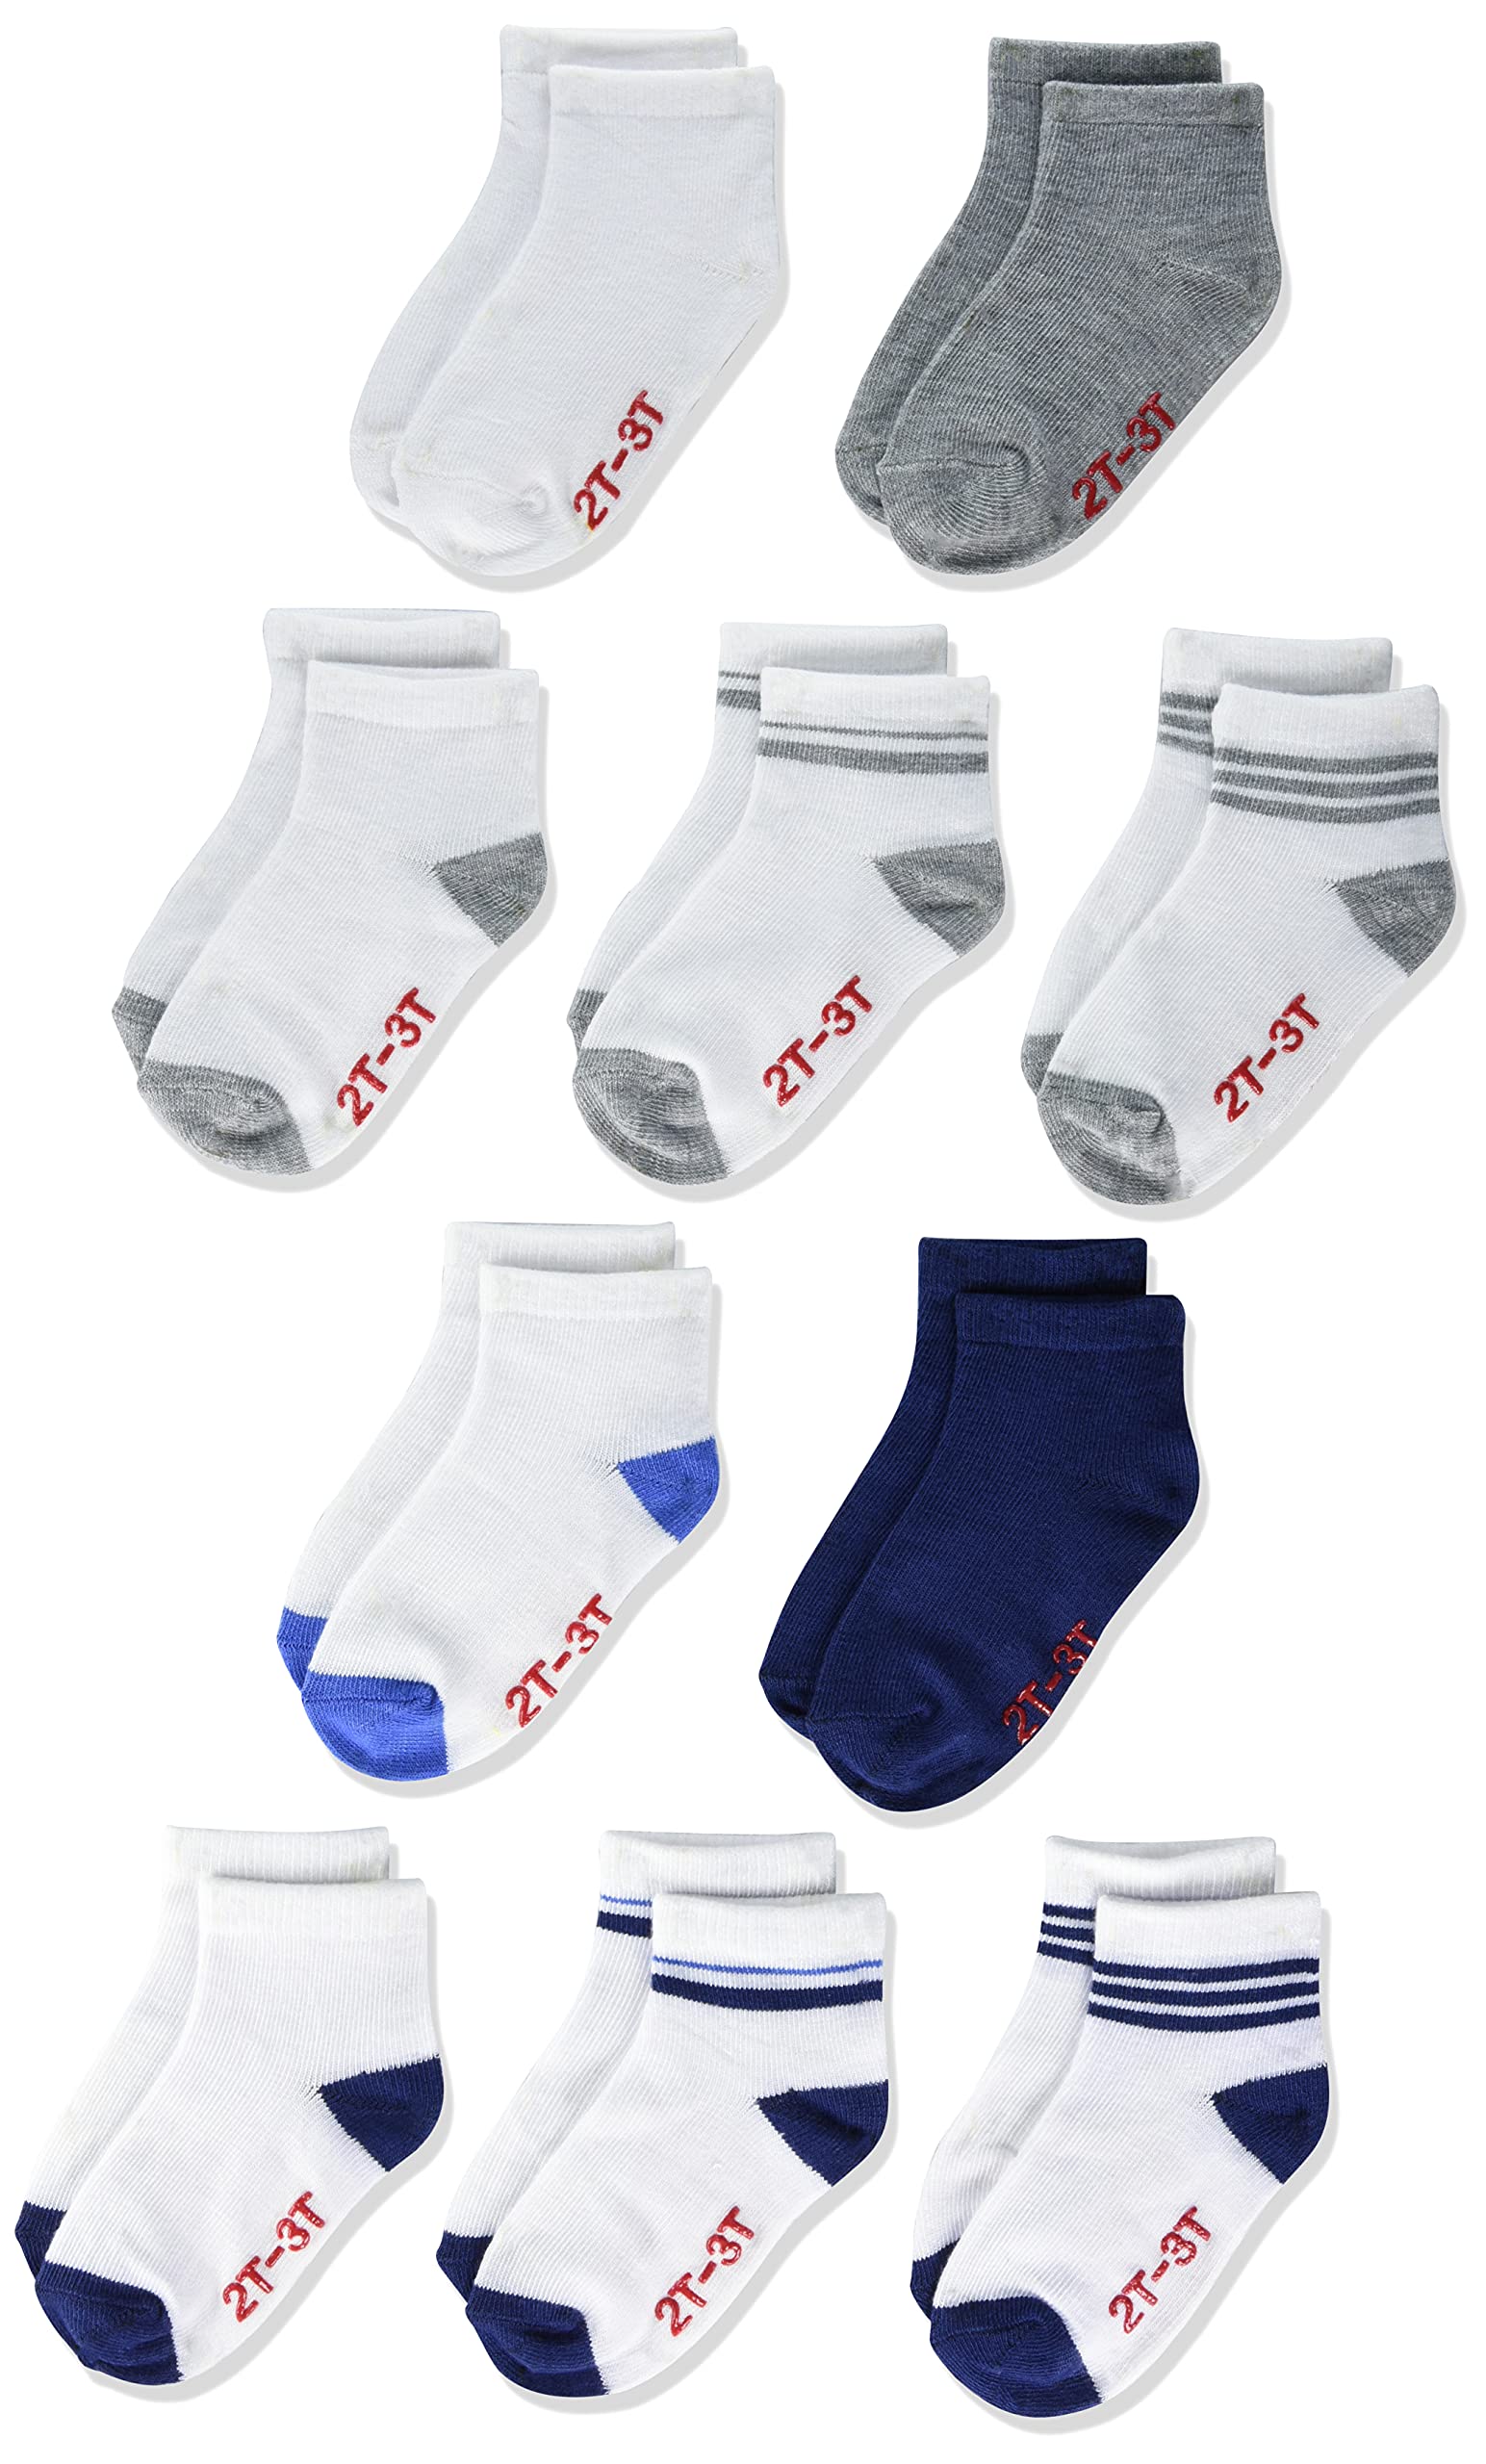 Hanes Baby and Toddler Socks, Non-Slip Grip Ankle Socks, Boys' and Girls', 10-Pair Packs